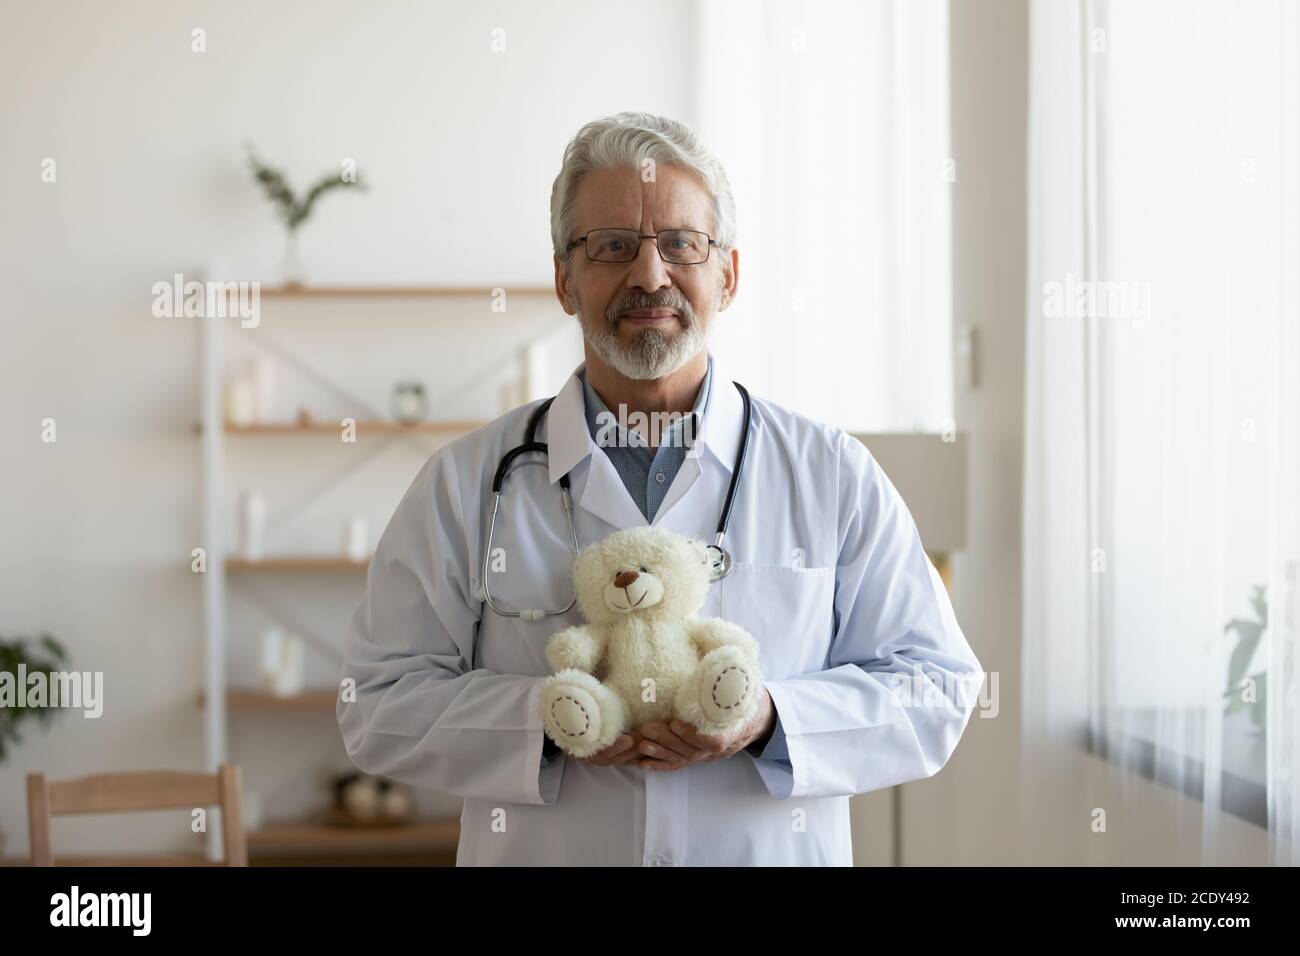 Tête de prise de vue portrait pédiatre mature tenant un ours en peluche Banque D'Images